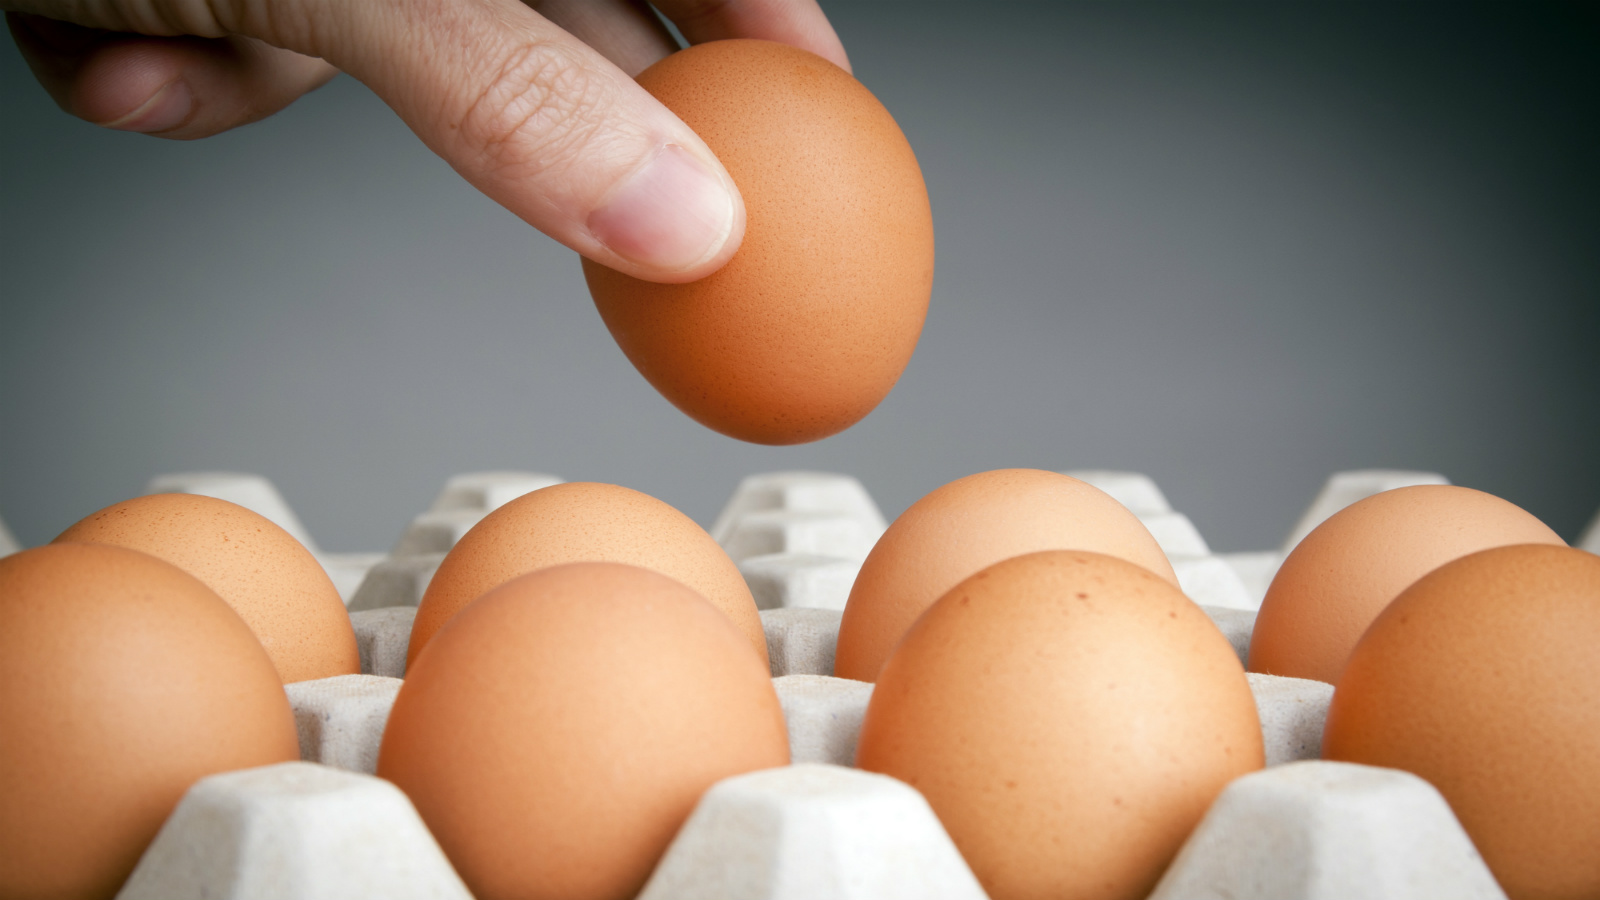 Hàm lượng dinh dưỡng cao khiến nhiều người thắc mắc liệu ăn trứng có giảm cân không?